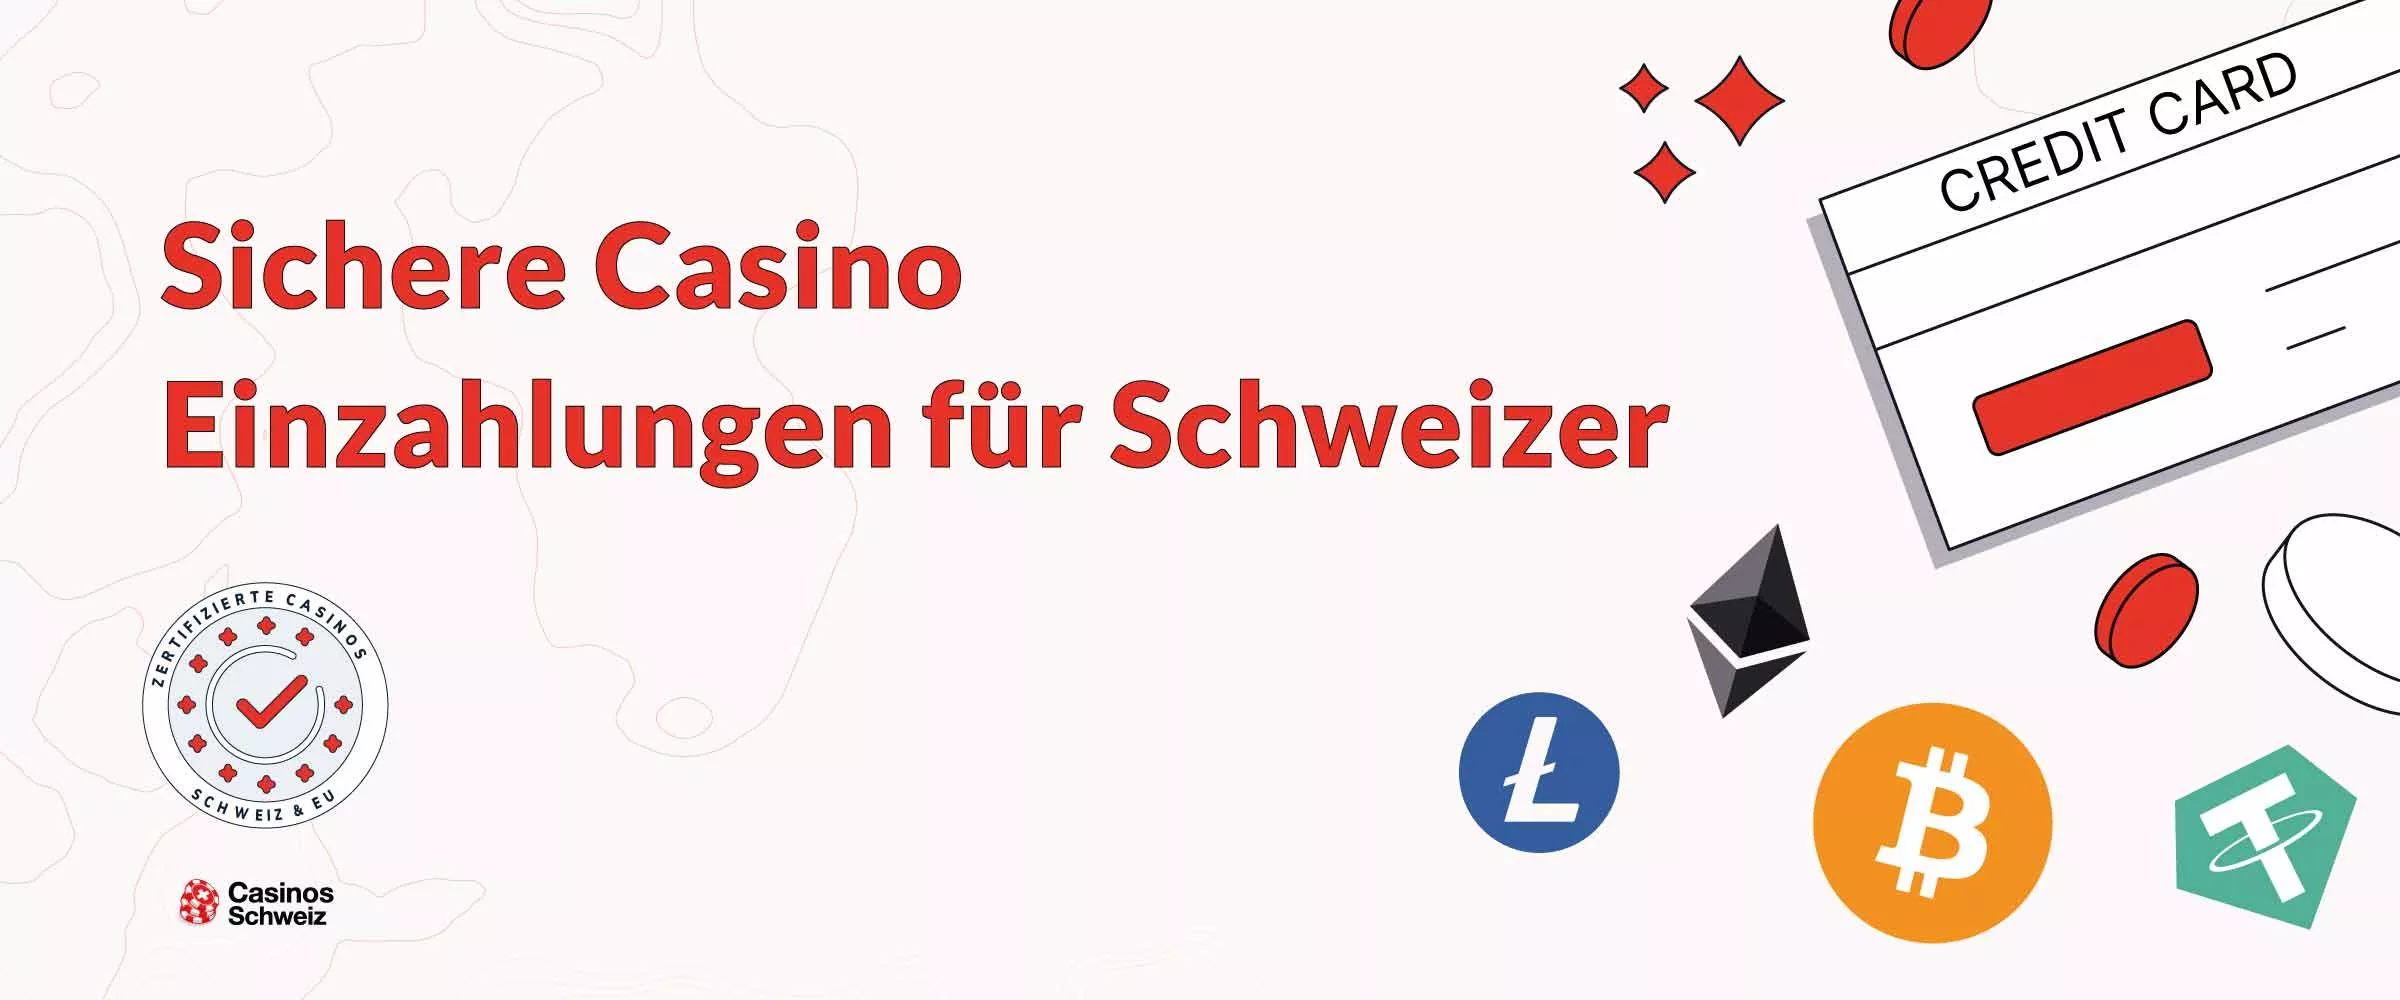 Sichere Casino Einzahlungen für Schweizer